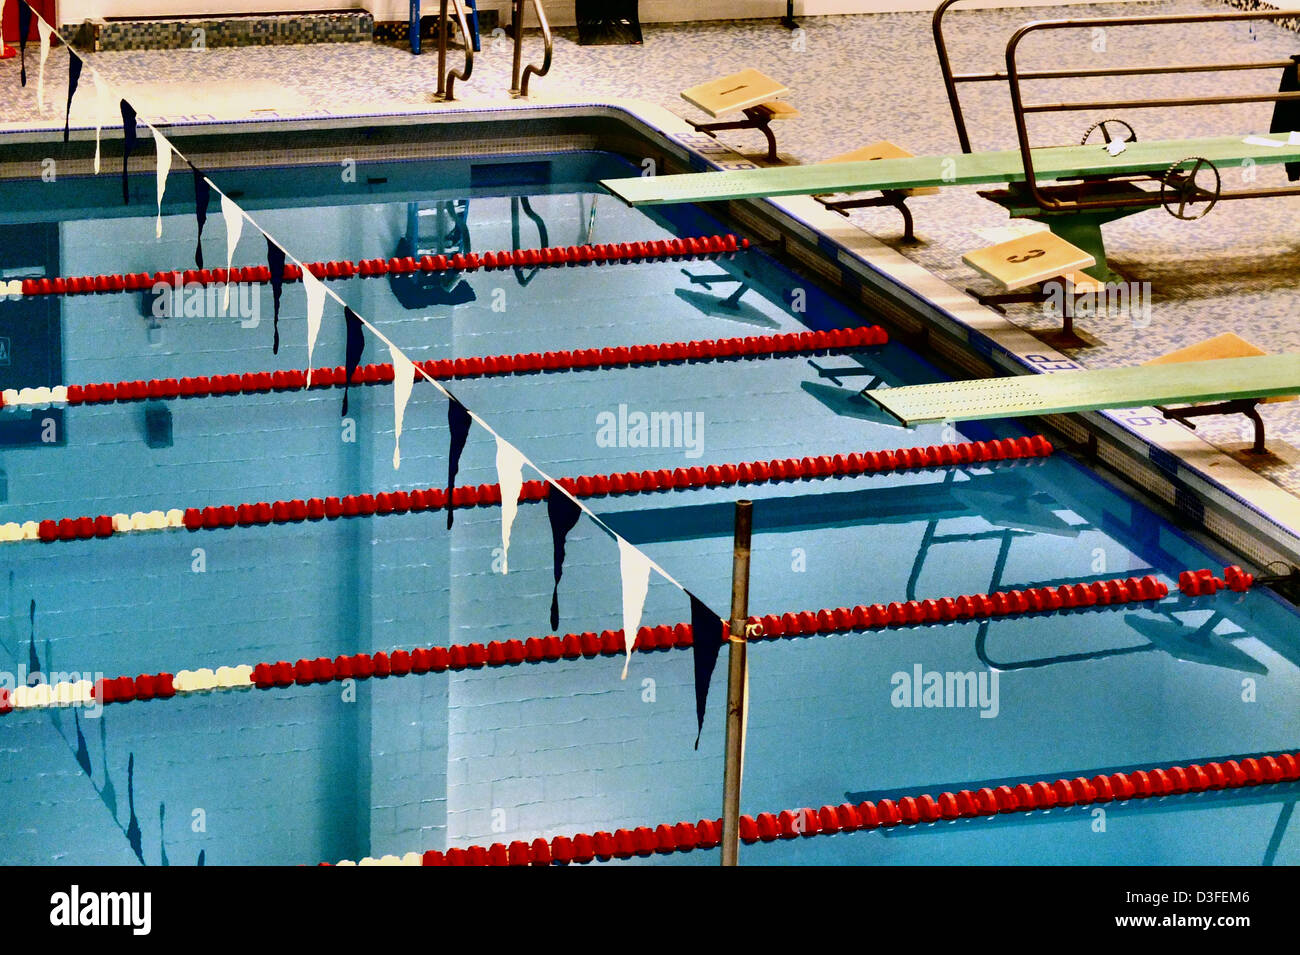 Eine Schule Pool oder Schwimmhalle für die Leichtathletik in Connecticut, USA (stilisiert mit Spezialfolie Technik verwendet Stockfoto